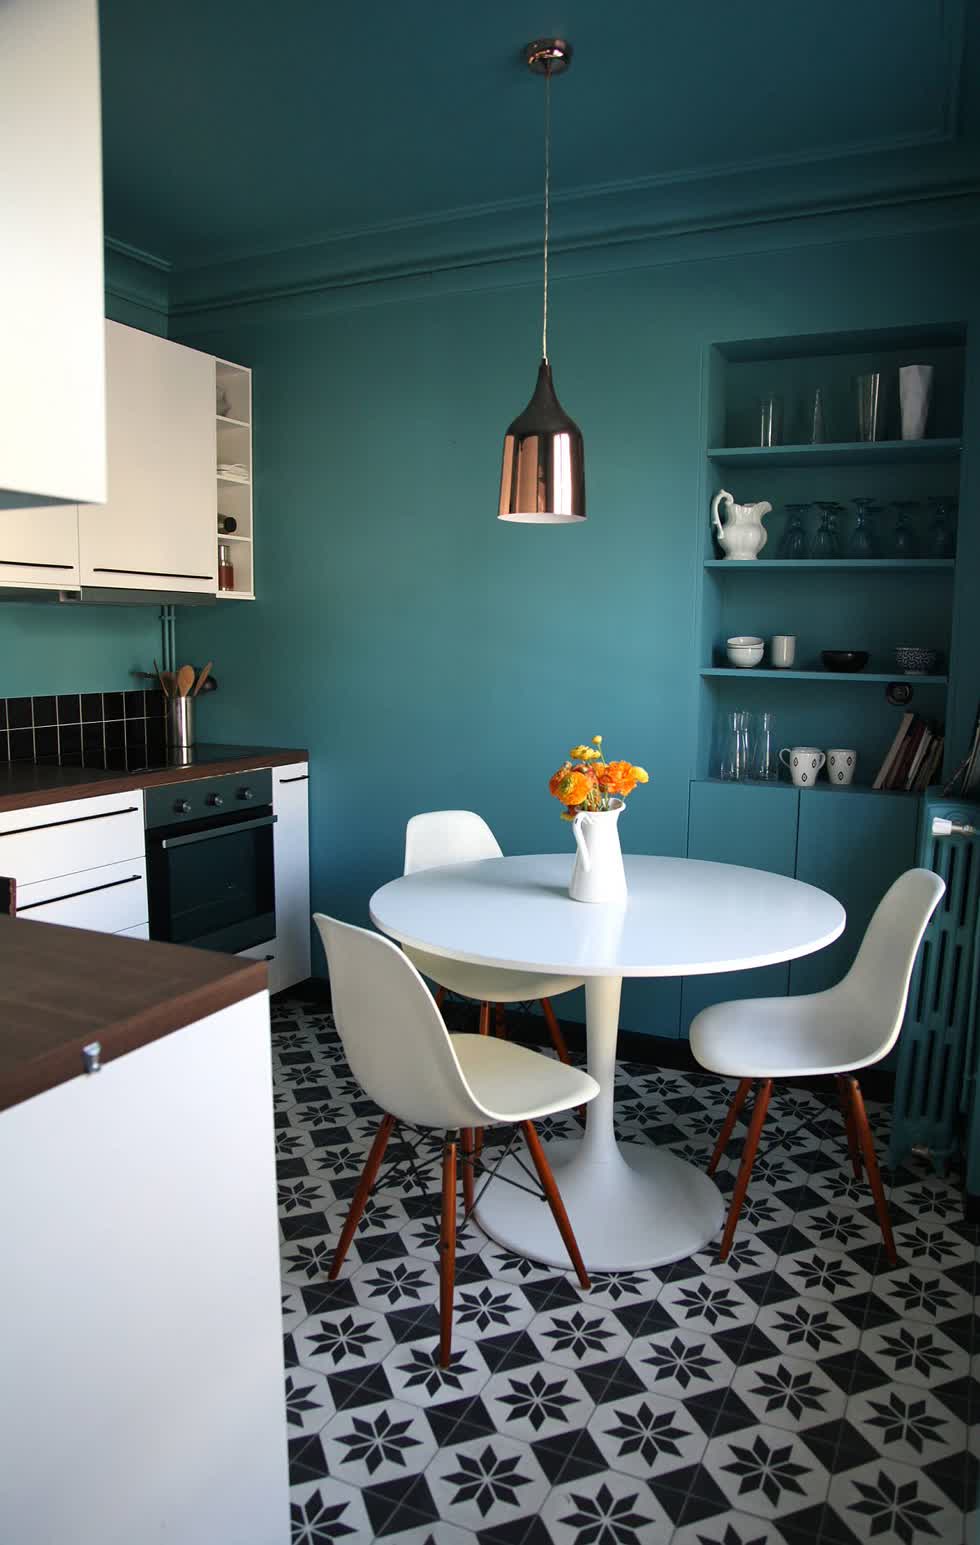 Tìm màu xanh ngọc phù hợp trong căn bếp nhỏ của bạn.